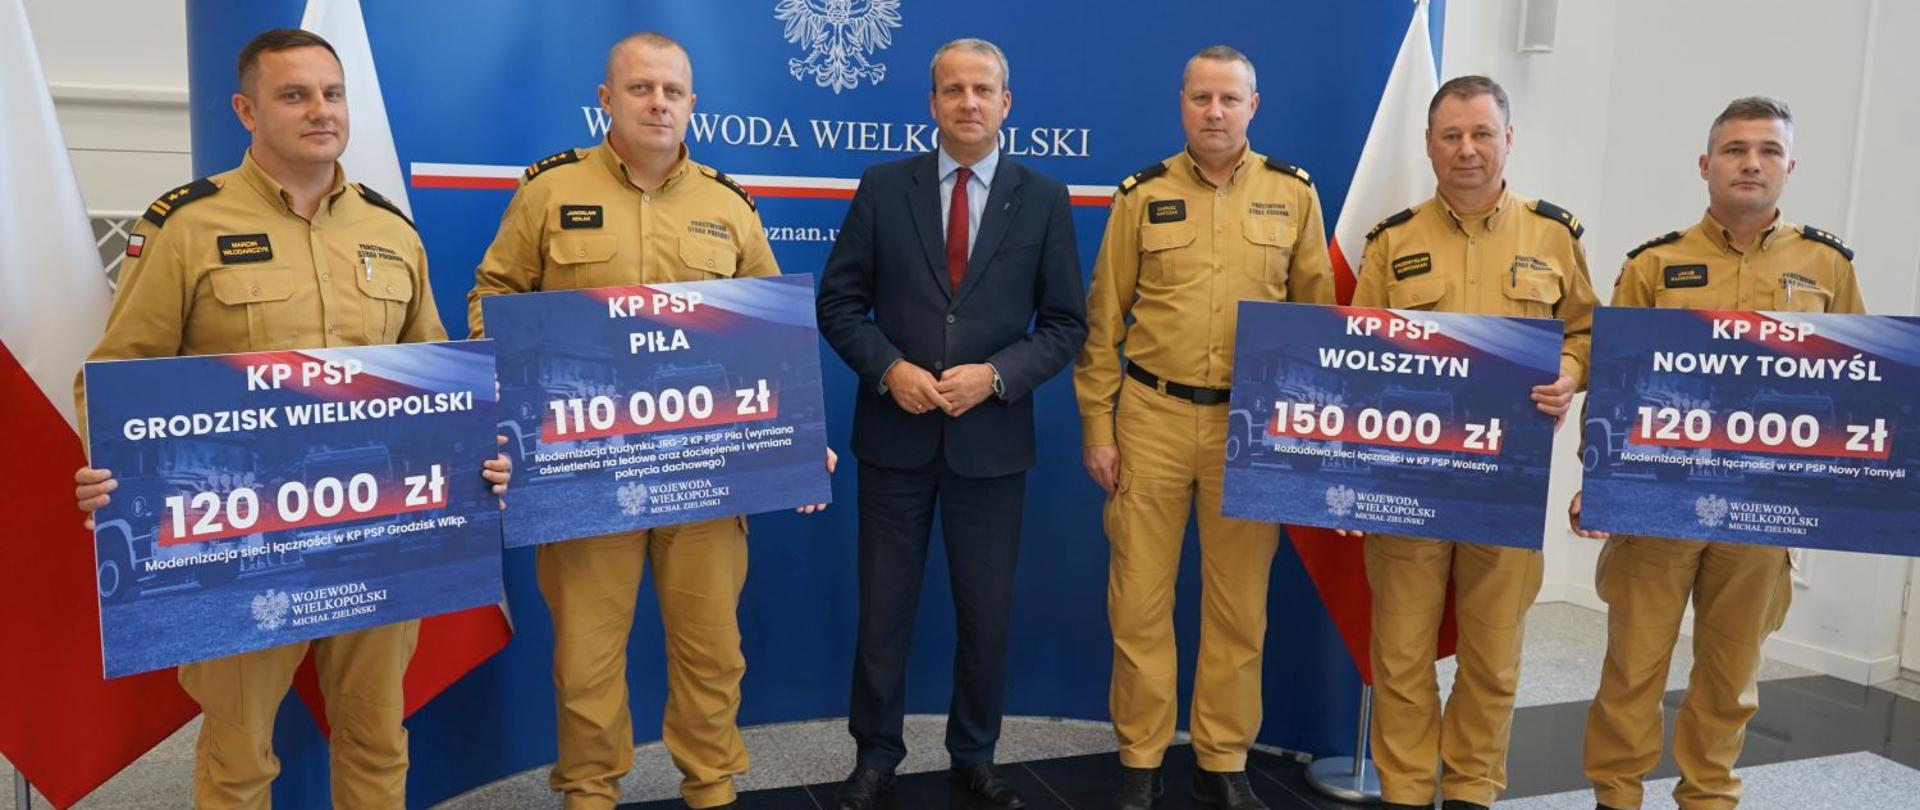 Zdjęcie pamiątkowe Wojewody Wielkopolskiego, Wielkopolskiego Komendanta Wojewódzkiego PSP oraz czterech komendantów powiatowych PSP wraz z promesami